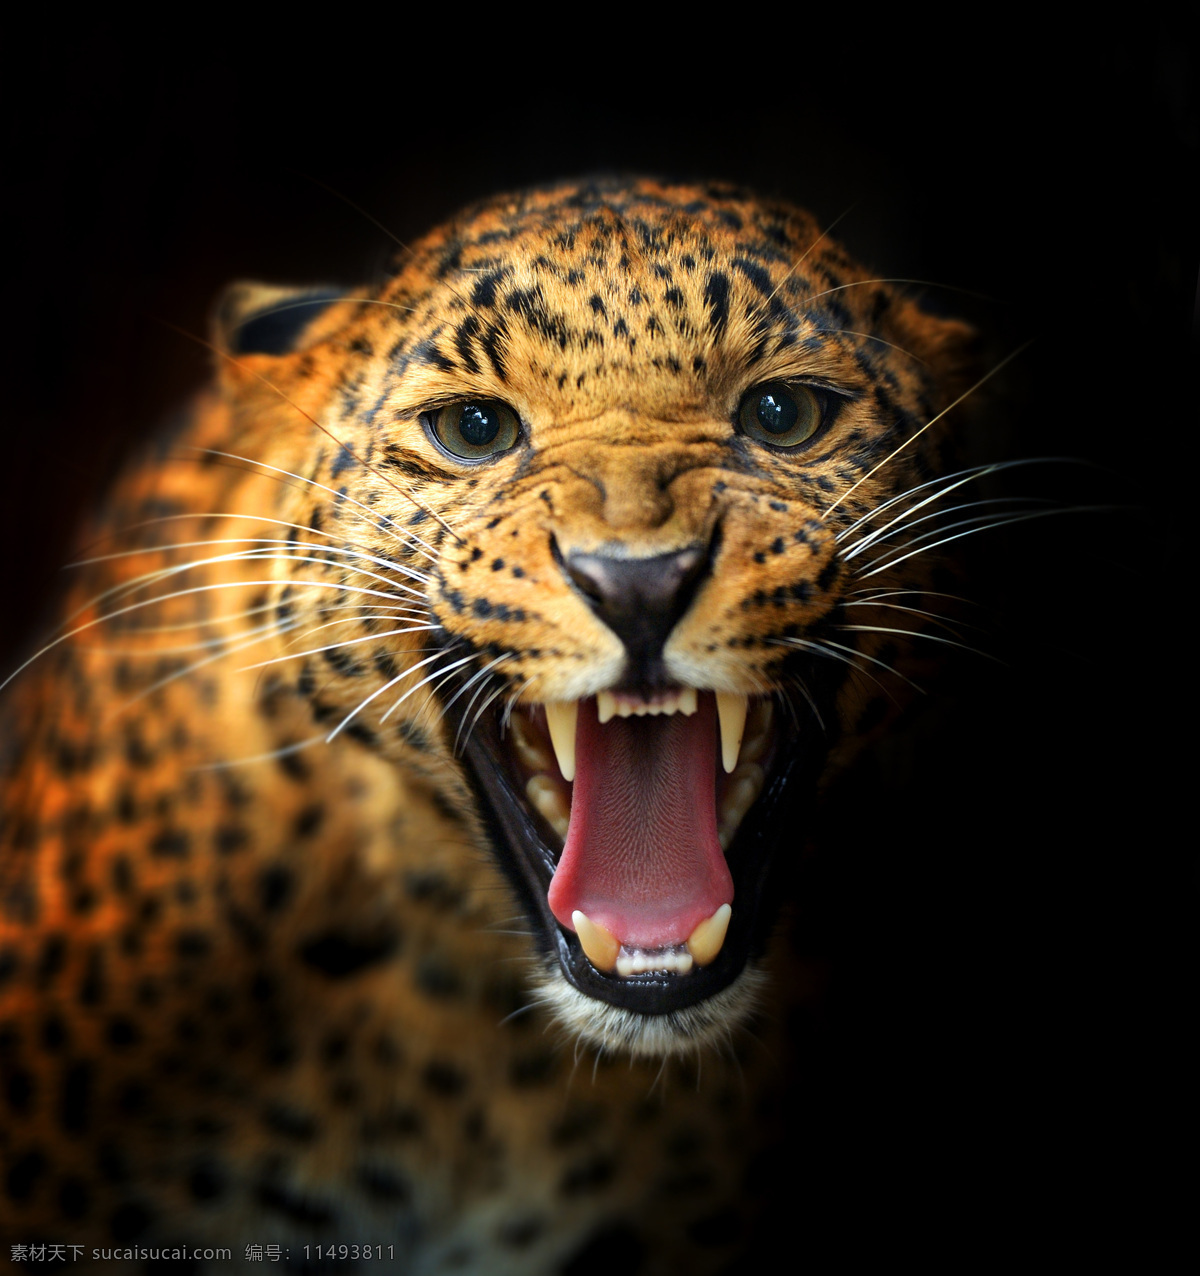 张开 嘴巴 豹子 张嘴 猎豹 金钱豹 野生动物 动物摄影 陆地动物 生物世界